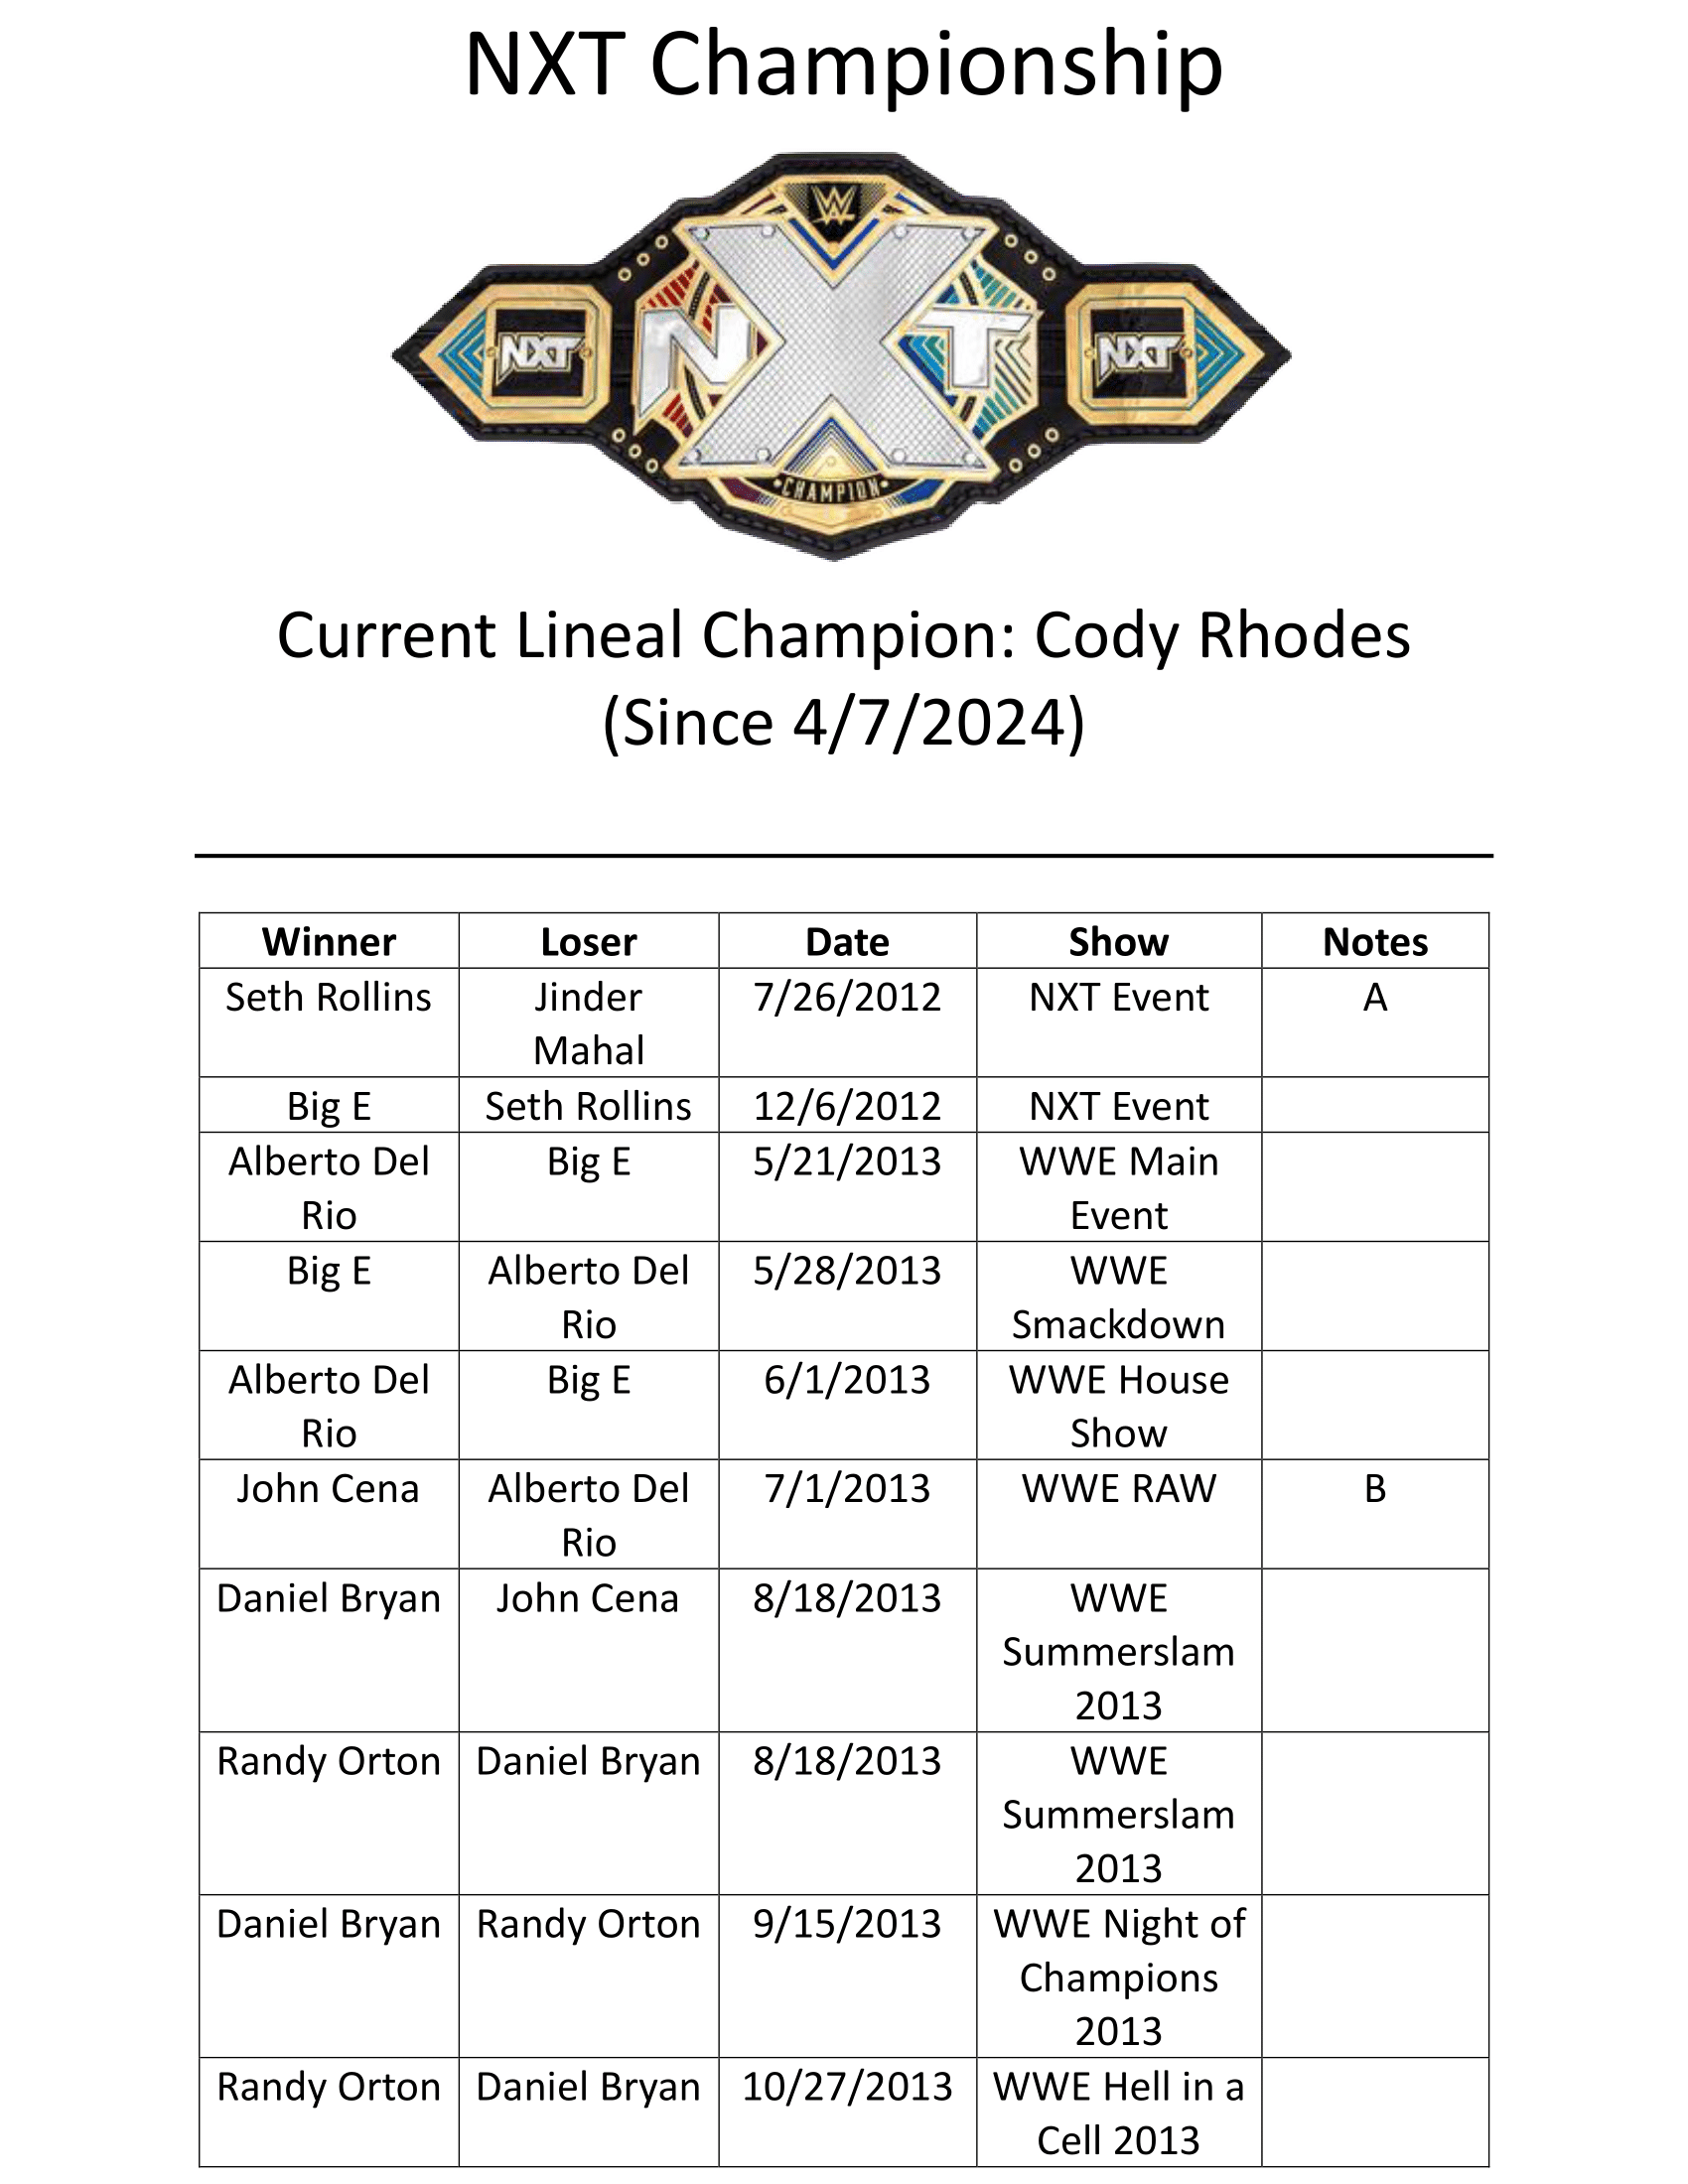 NXT-Championship-1.png